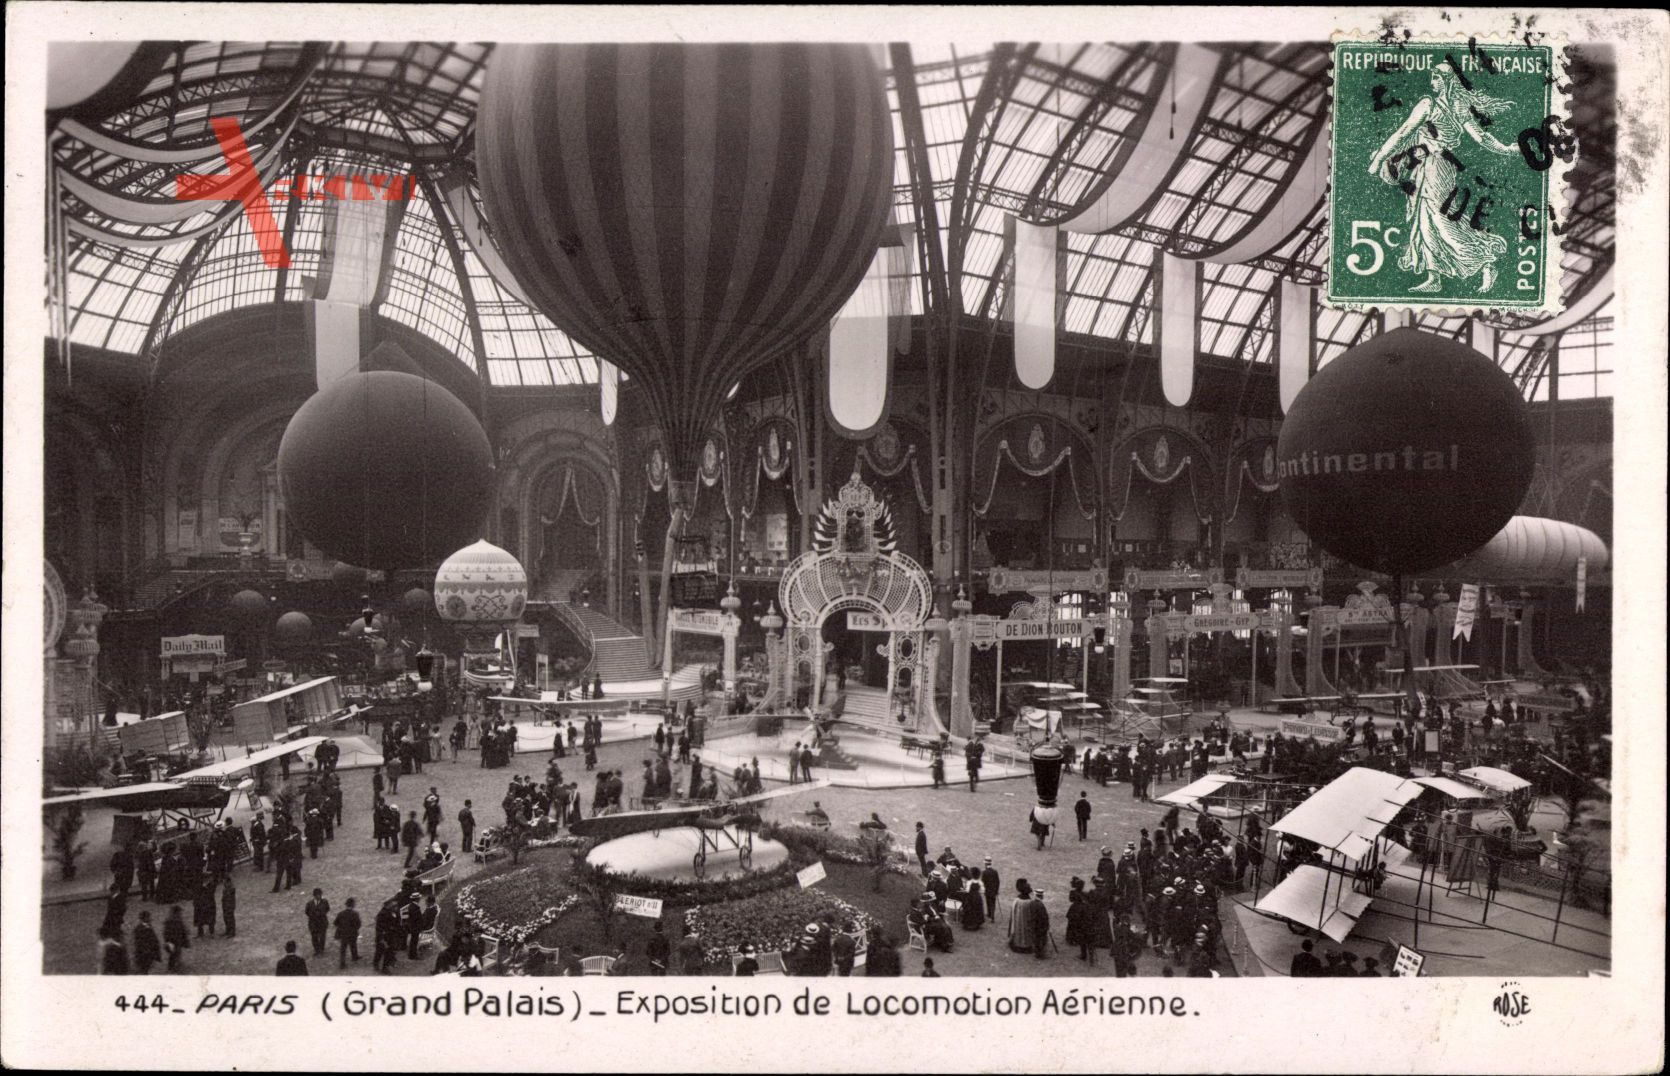 Paris, Grand Palais, Exposition de Locomotion Aérienne, Ballons, Continental